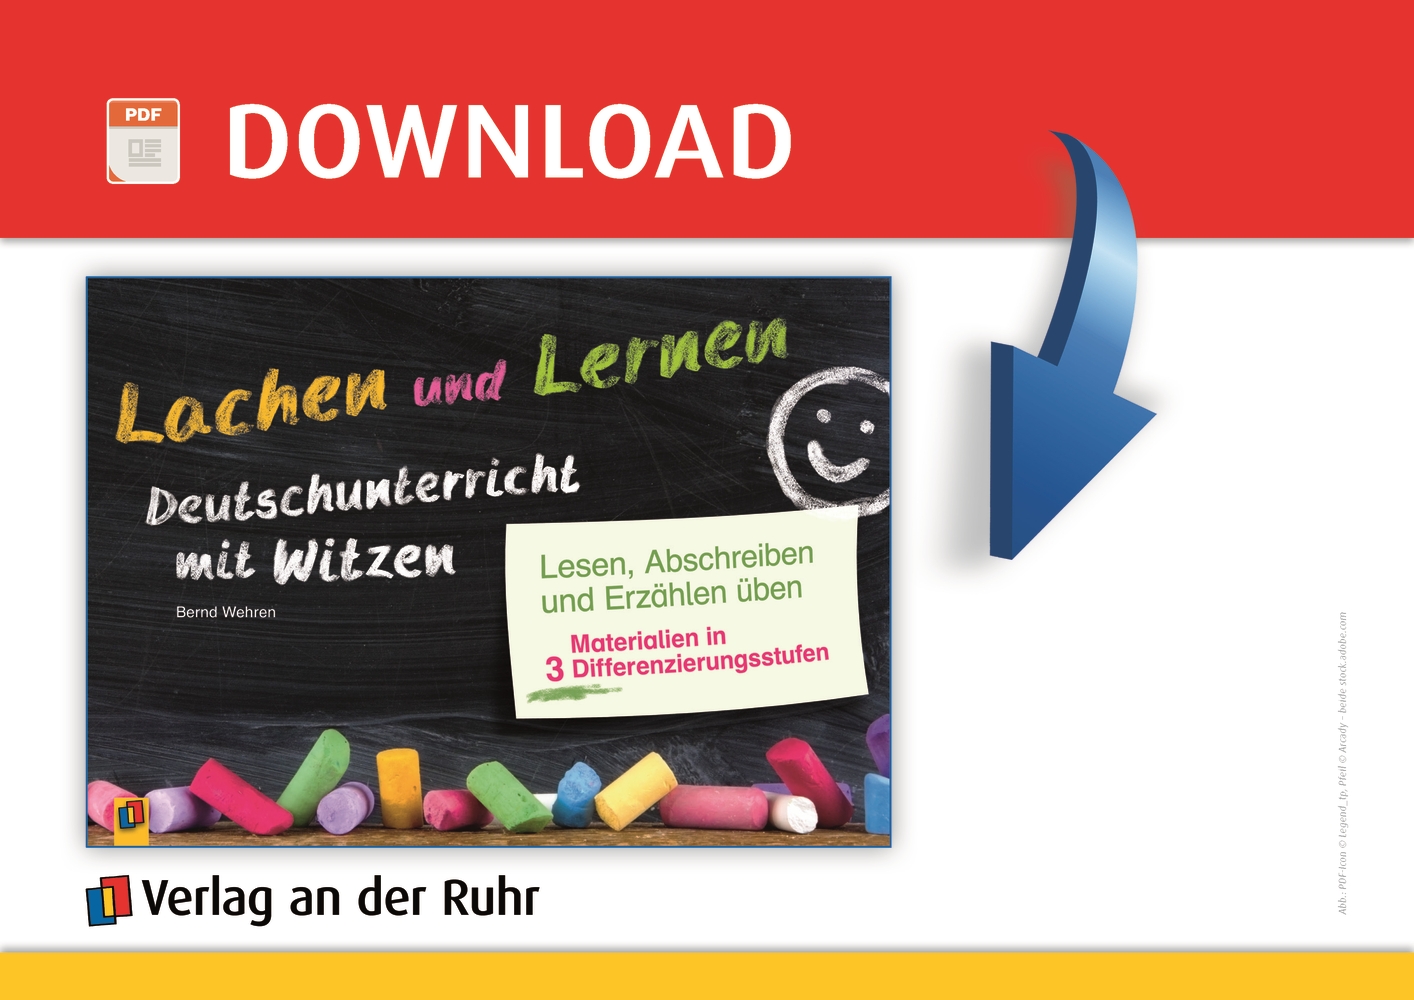 Lachen und Lernen – Deutschunterricht mit Witzen - PDF-Basis-Lizenz